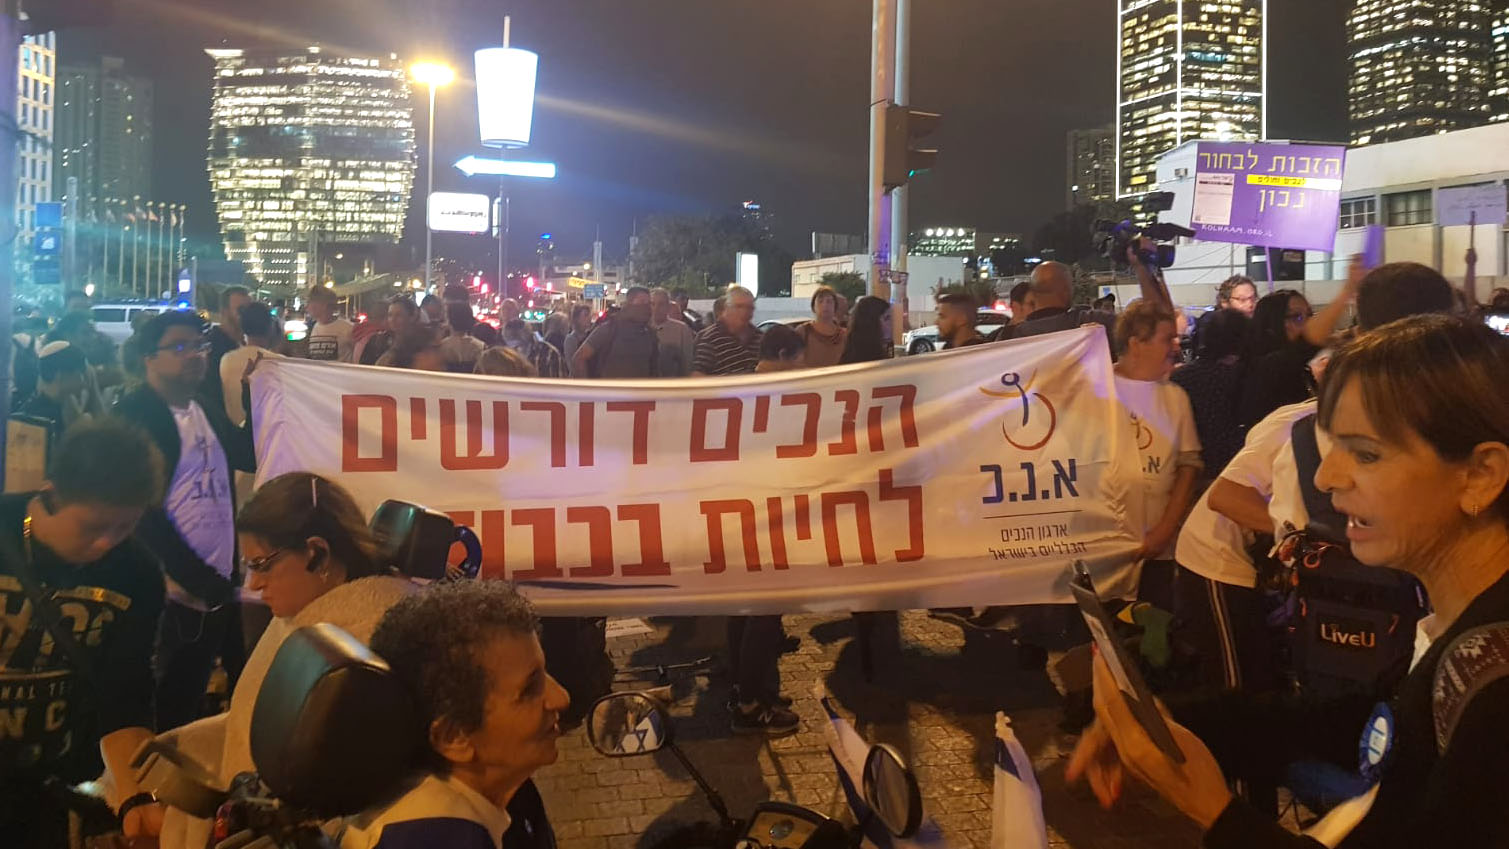 הפגנת הנכים מחוץ לקניון עזריאלי בתל אביב. 31 באוקטובר 2019. (קרדיט: טל כרמון)